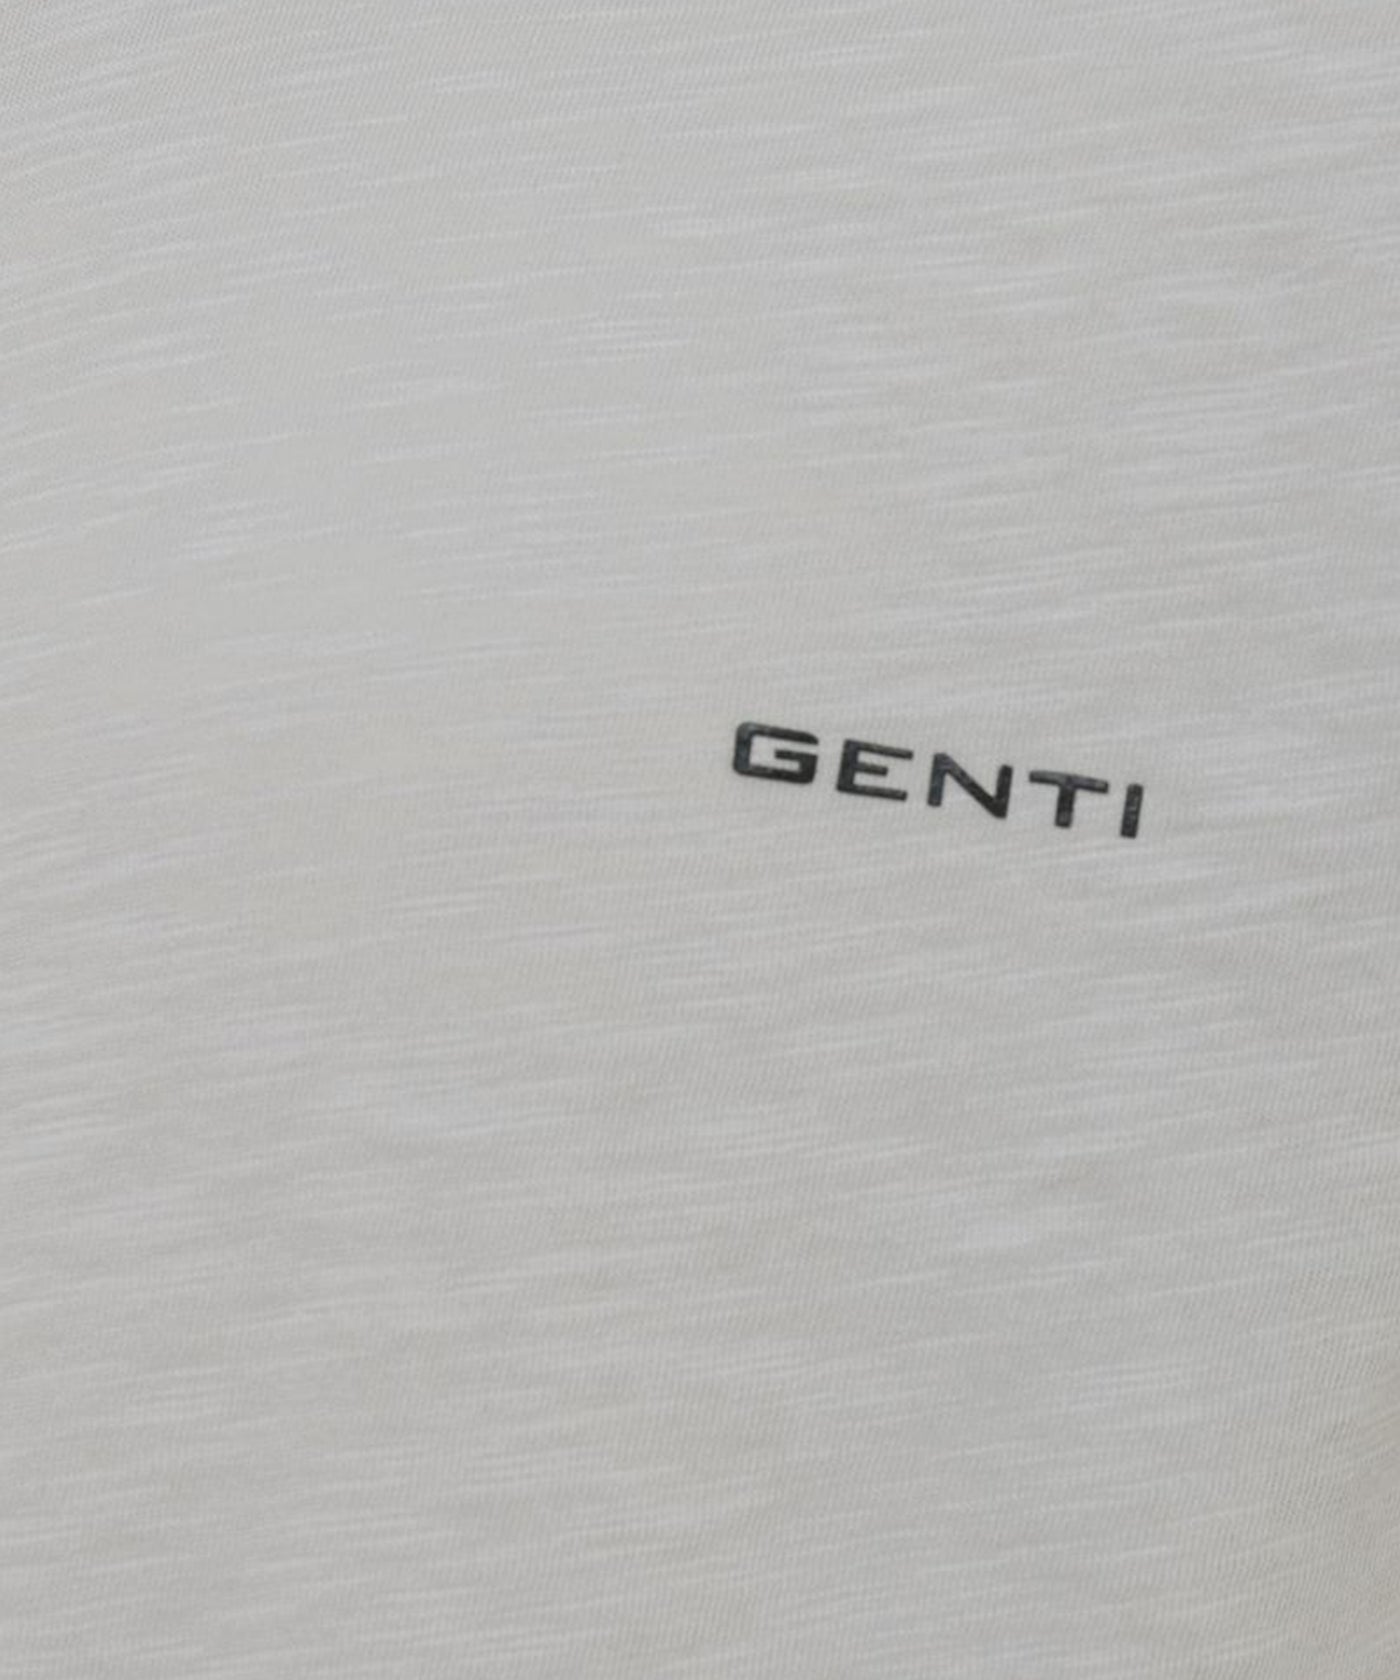 Genti - J7037-1222 - T-shirt Ss - 048 Brown